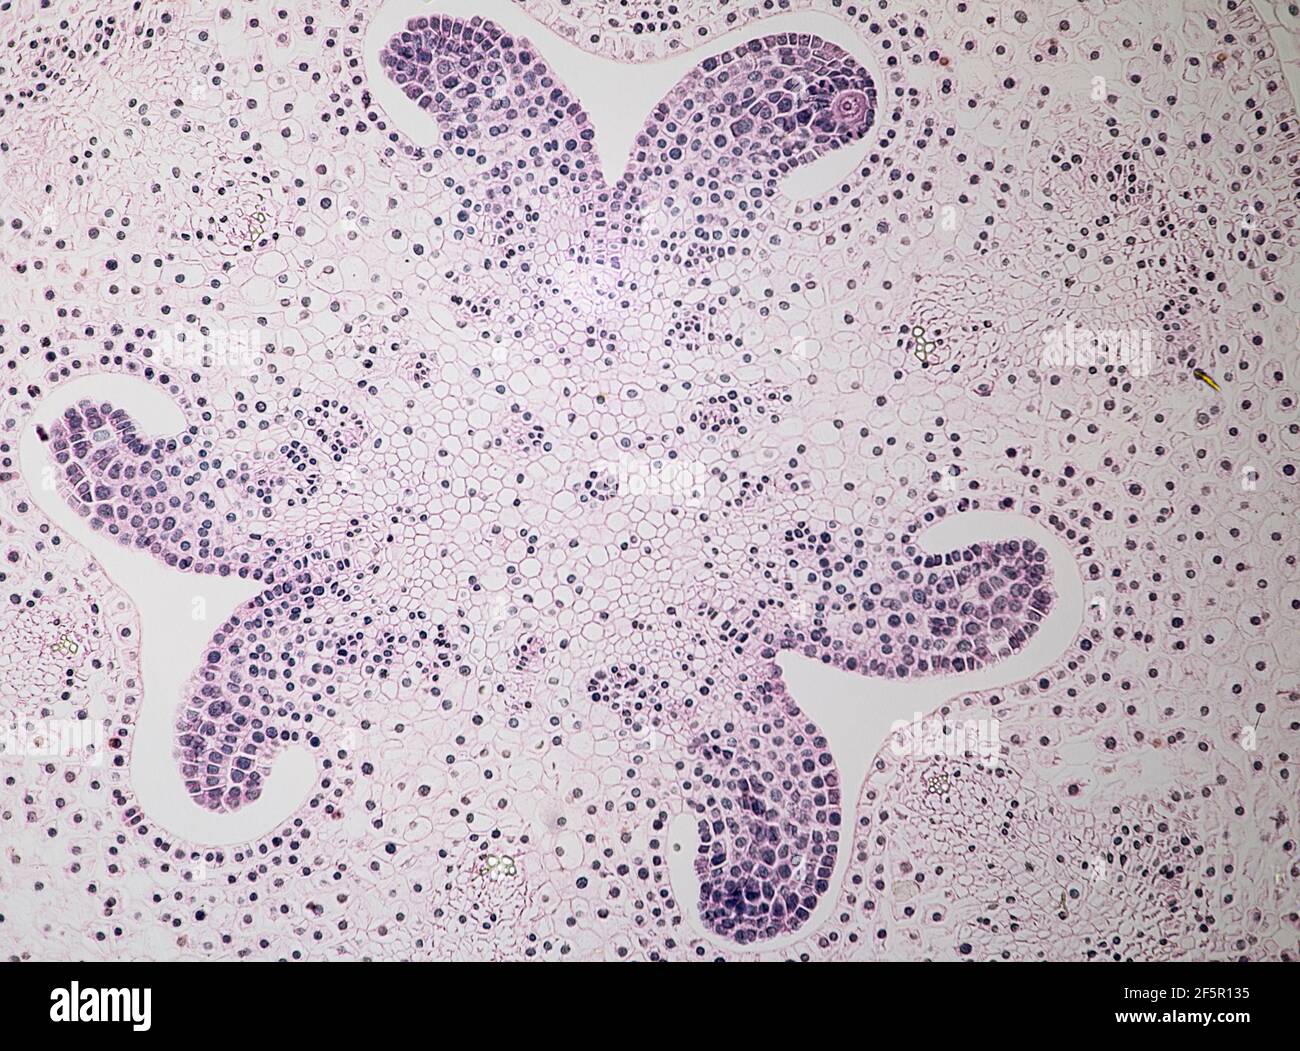 meiosis en las células que se muestran en la antera del lirio bajo una luz microscopio Foto de stock